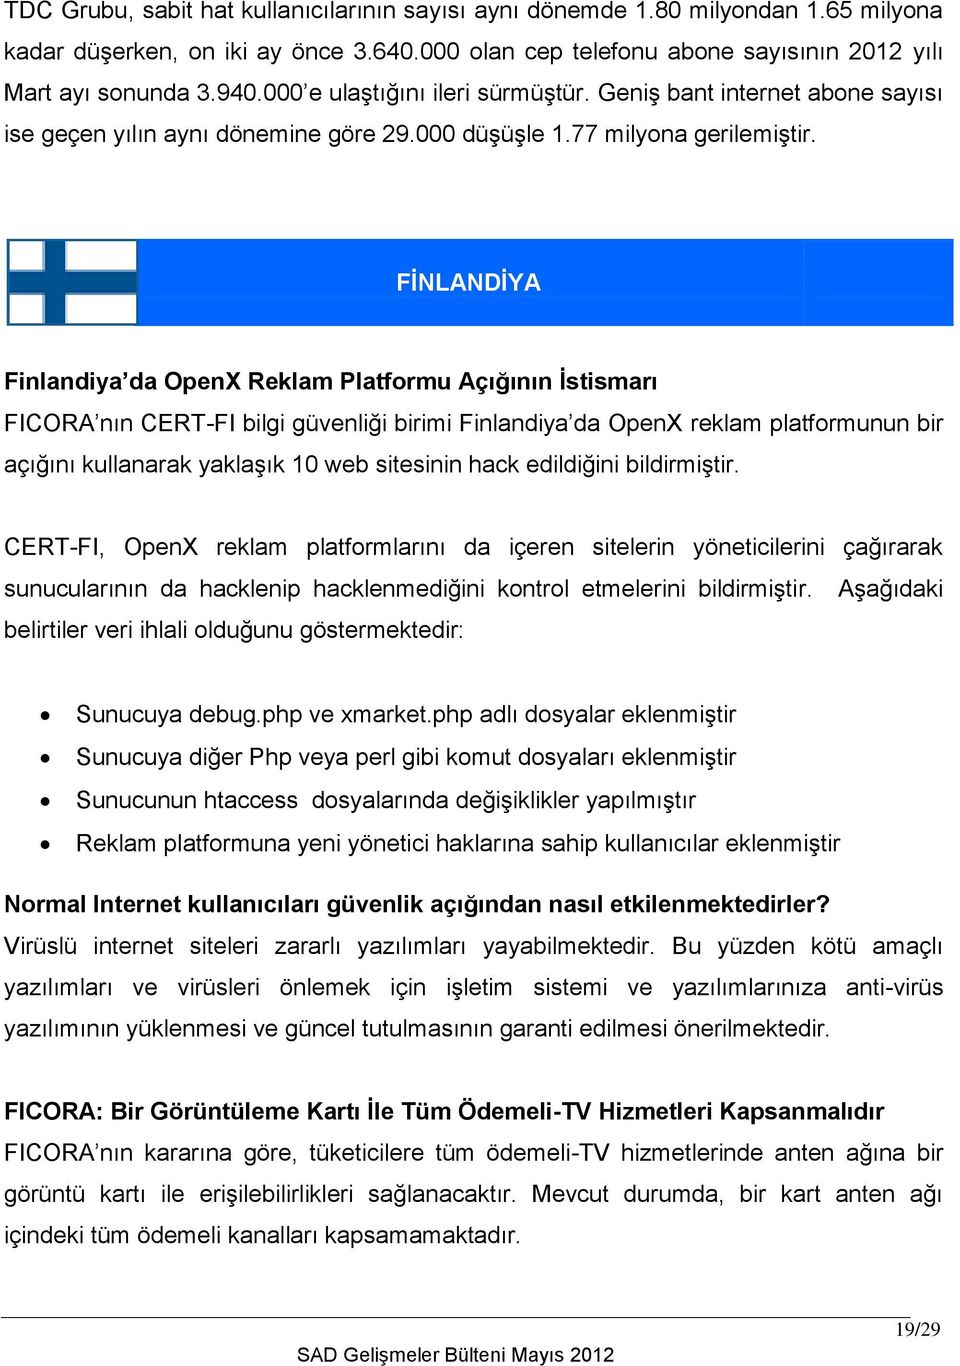 FİNLANDİYA Finlandiya da OpenX Reklam Platformu Açığının İstismarı FICORA nın CERT-FI bilgi güvenliği birimi Finlandiya da OpenX reklam platformunun bir açığını kullanarak yaklaşık 10 web sitesinin